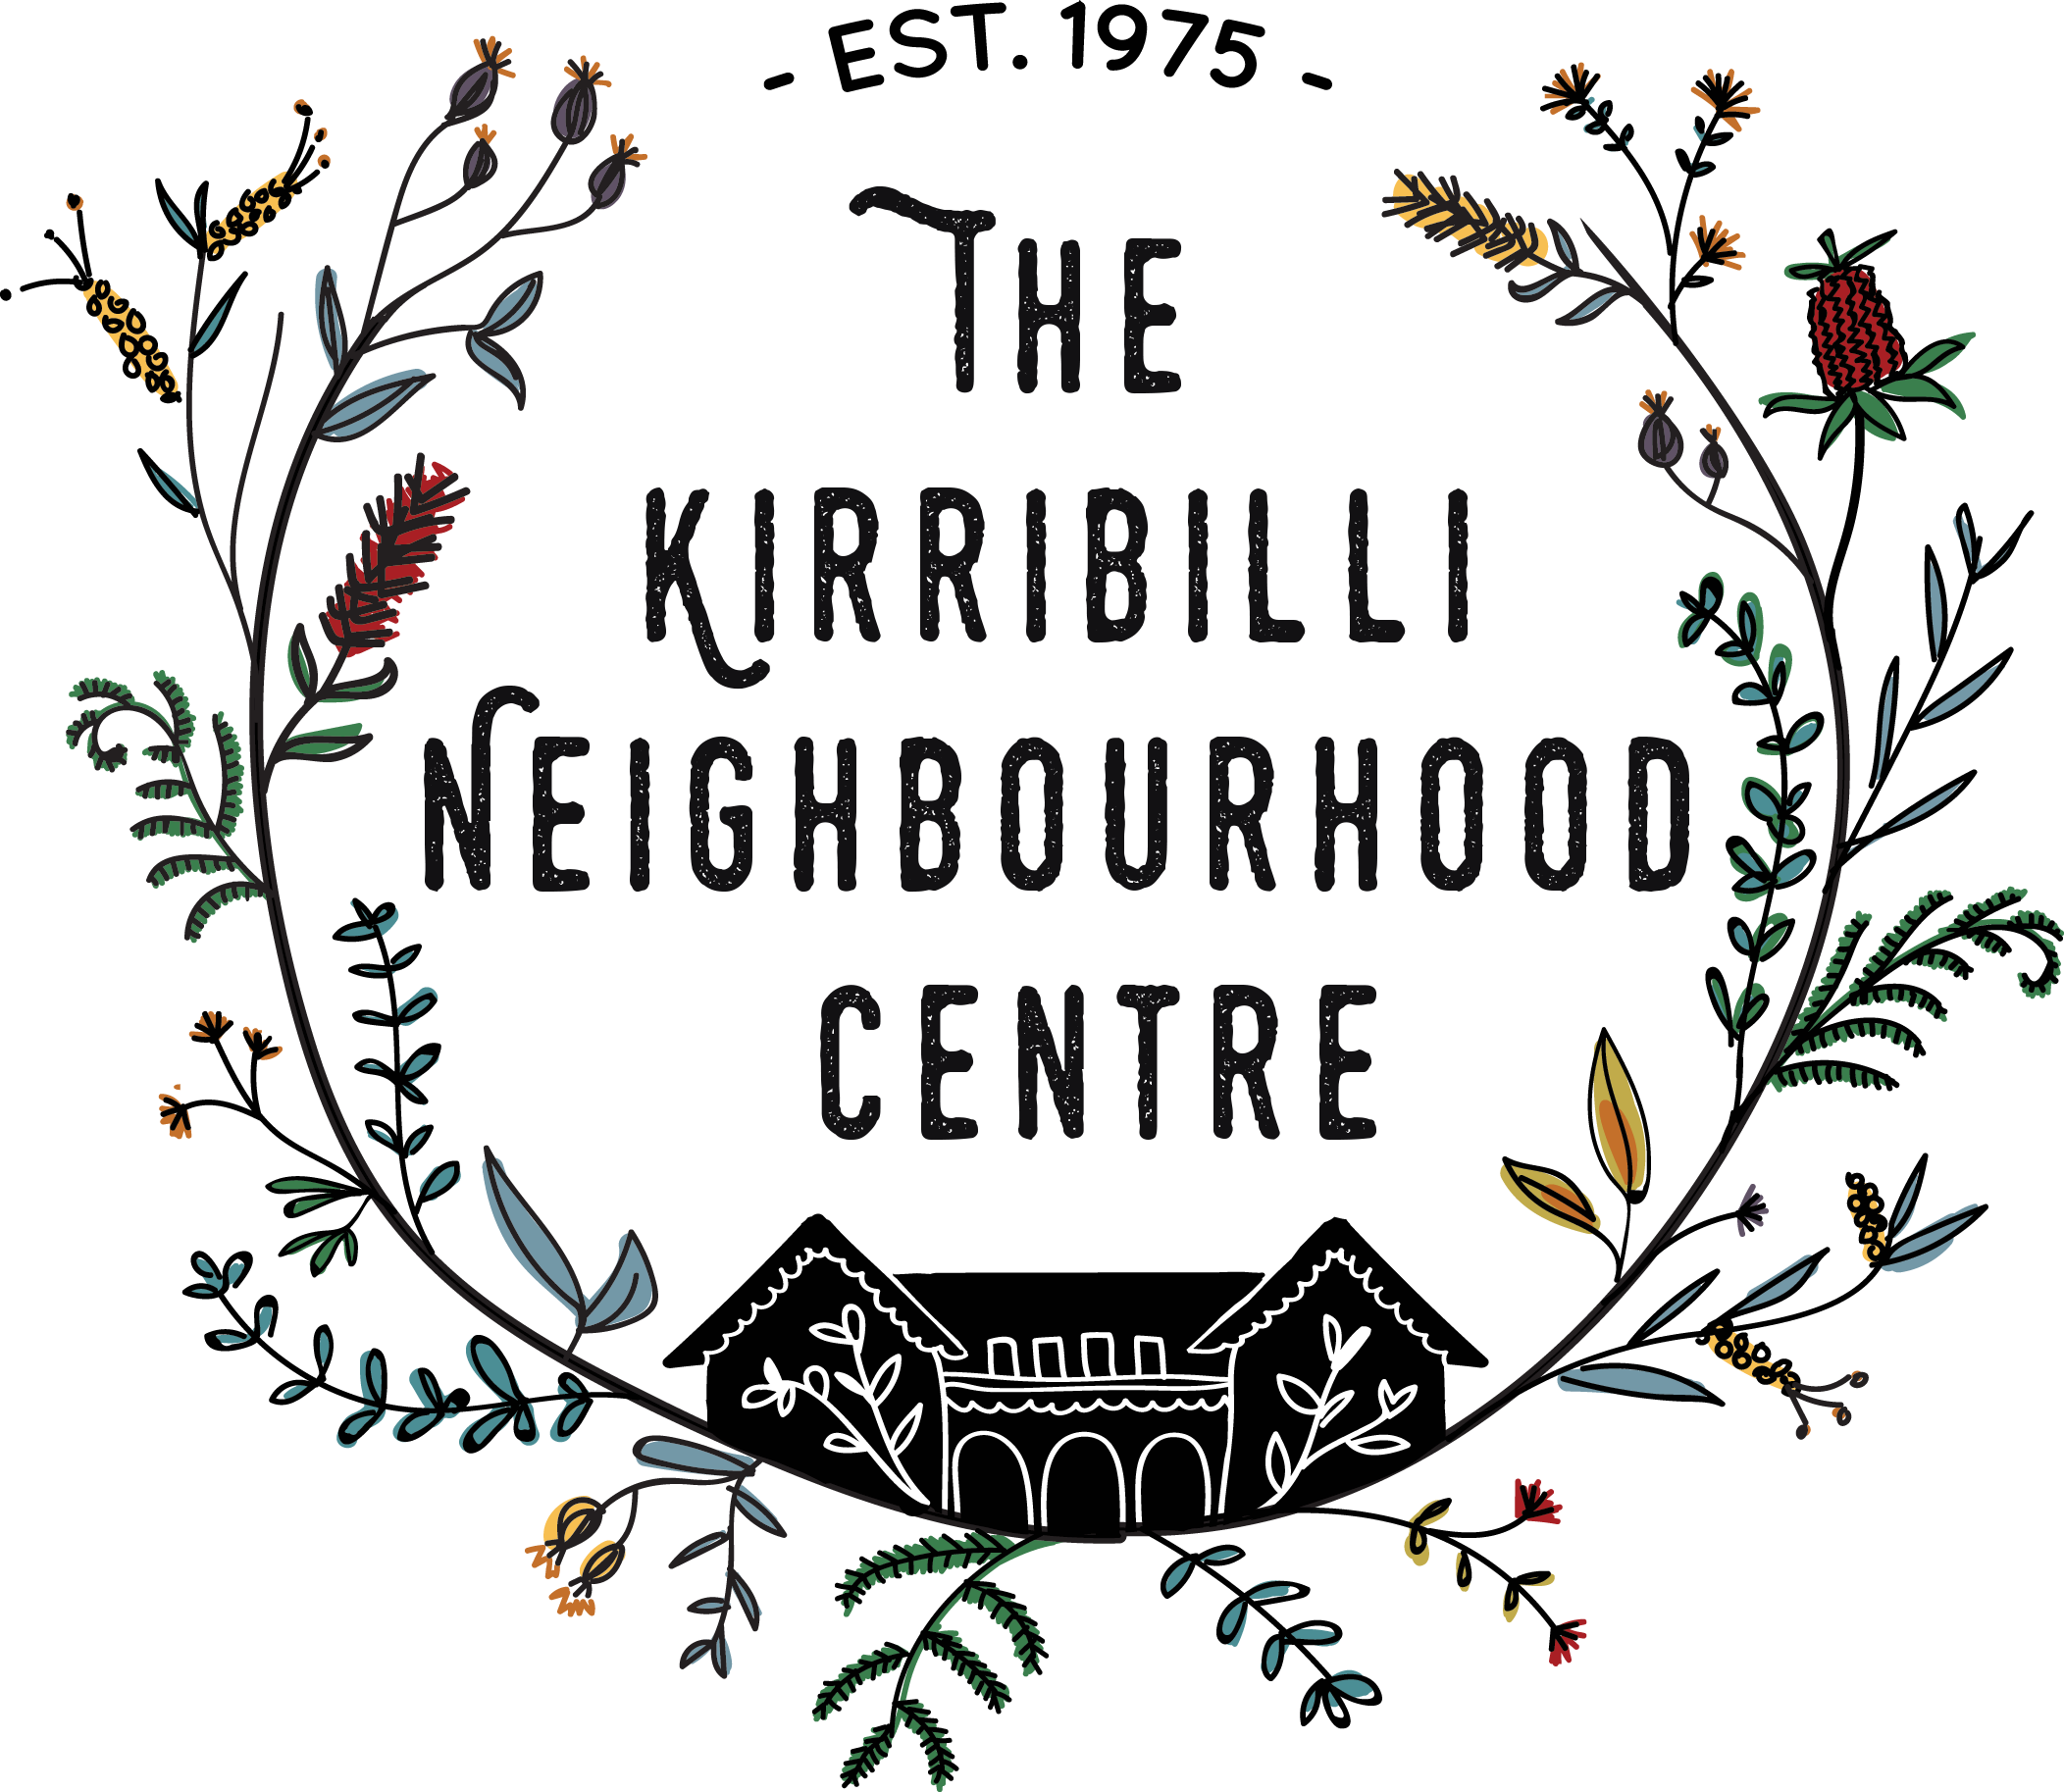 The Kirribilli Neighbourhood Centre